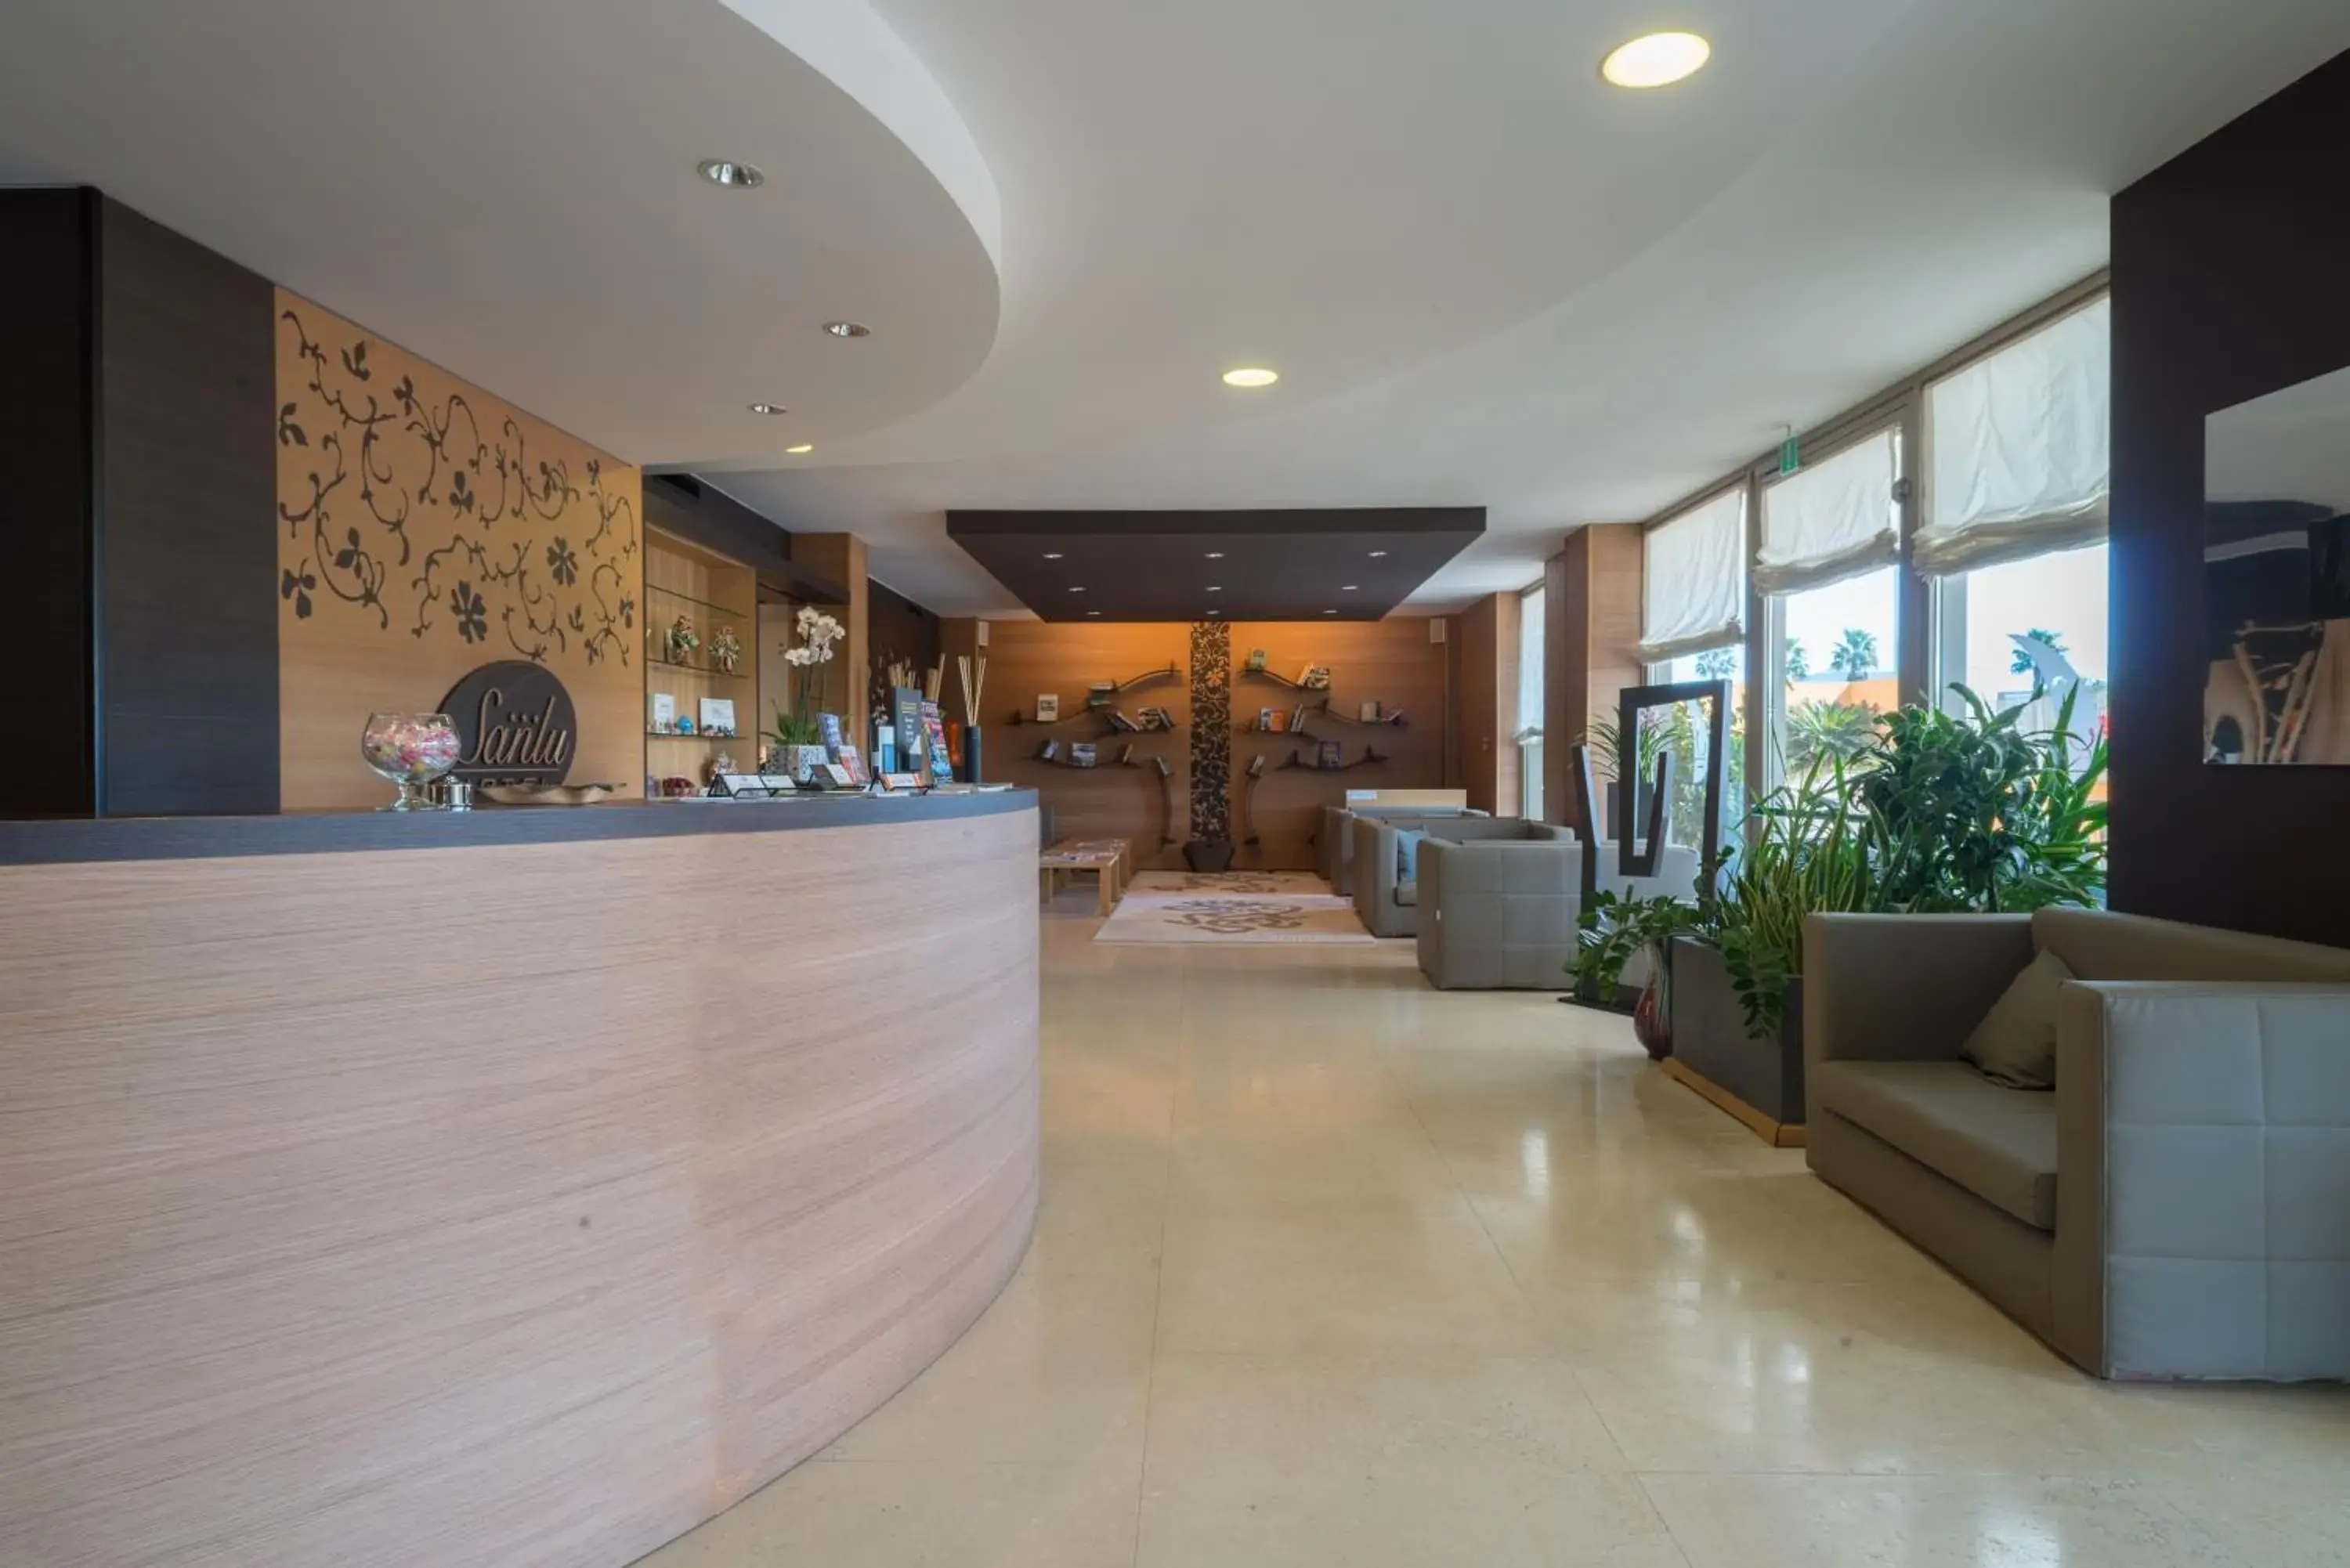 Lobby or reception, Lobby/Reception in Sanlu Hotel